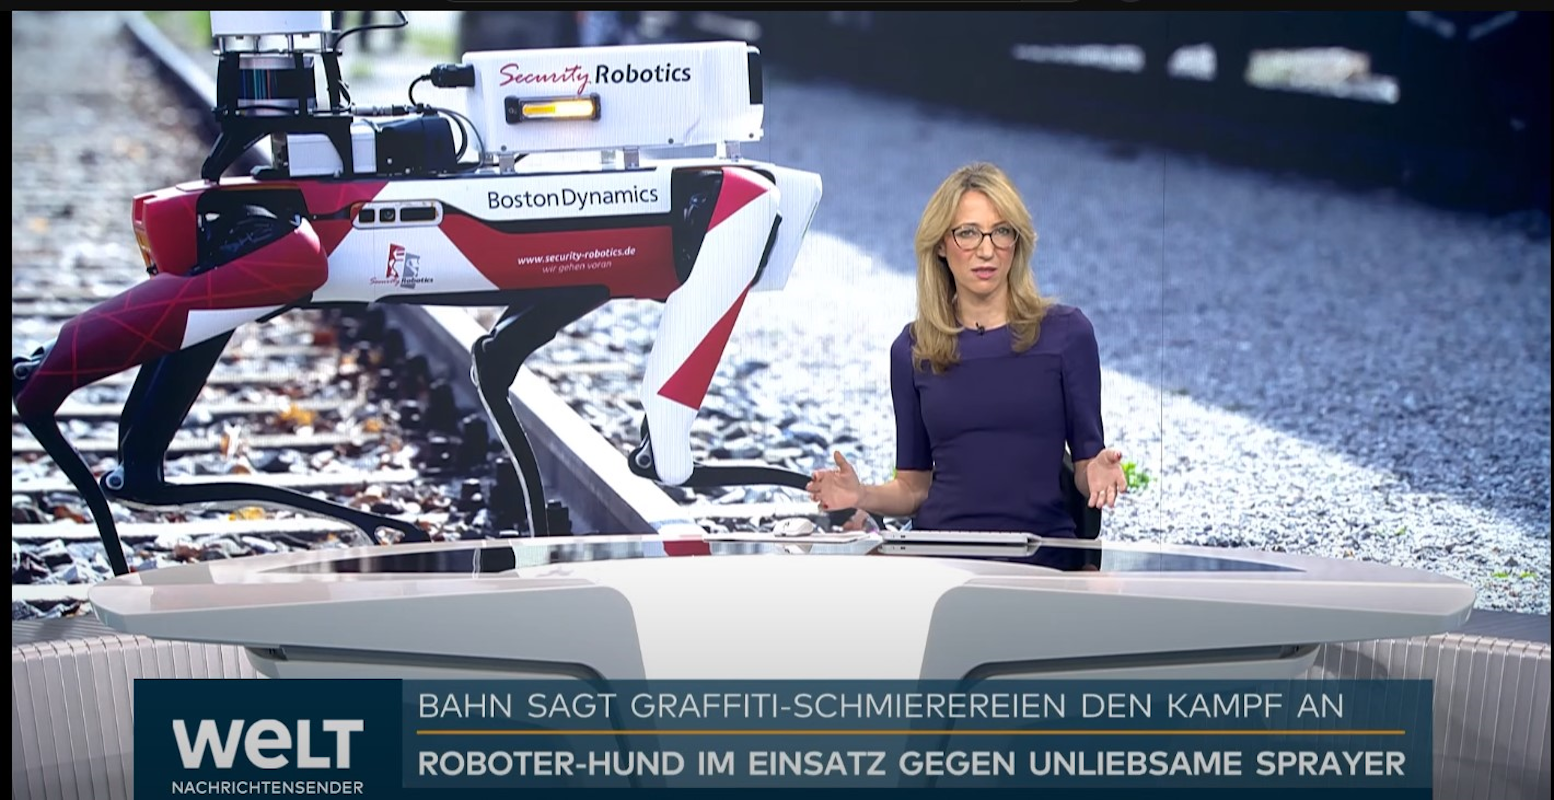 Welt Nachrichtensender_Bahn sagt Grafitti-Schmierereien den Kampf an - Spot on for the next step security on DB